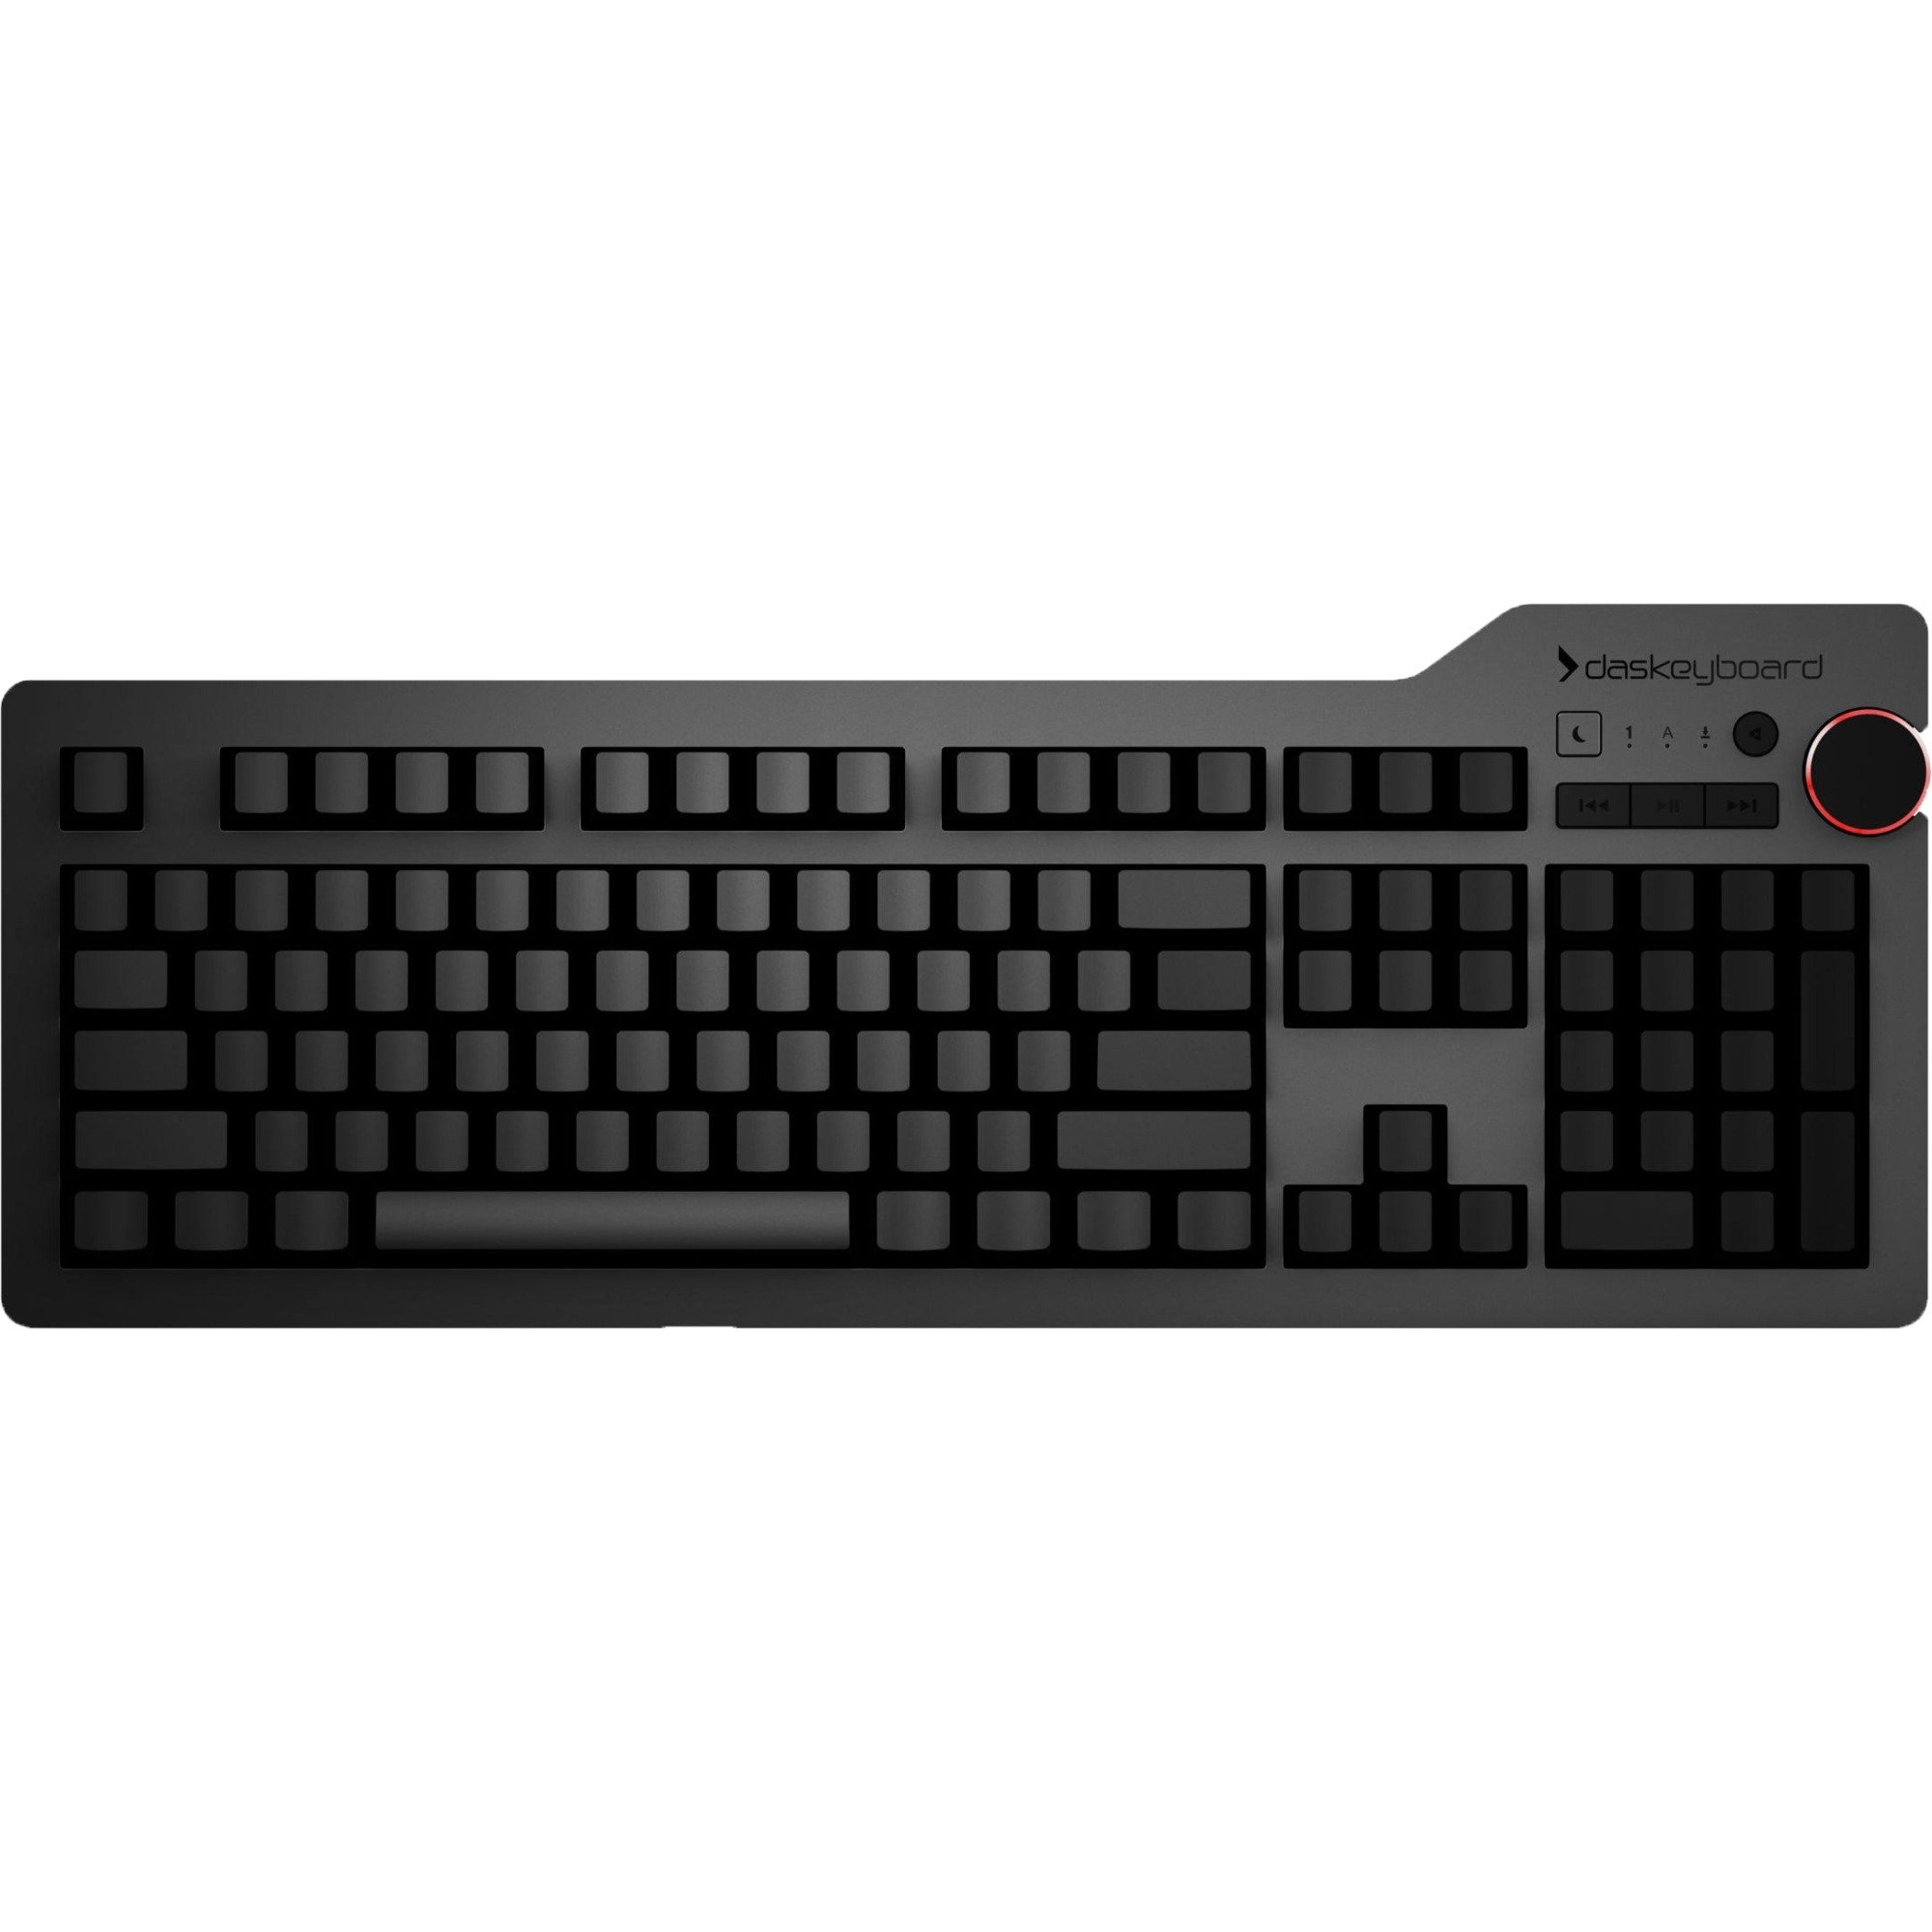 Image of Alternate - 4 Ultimate, Gaming-Tastatur online einkaufen bei Alternate